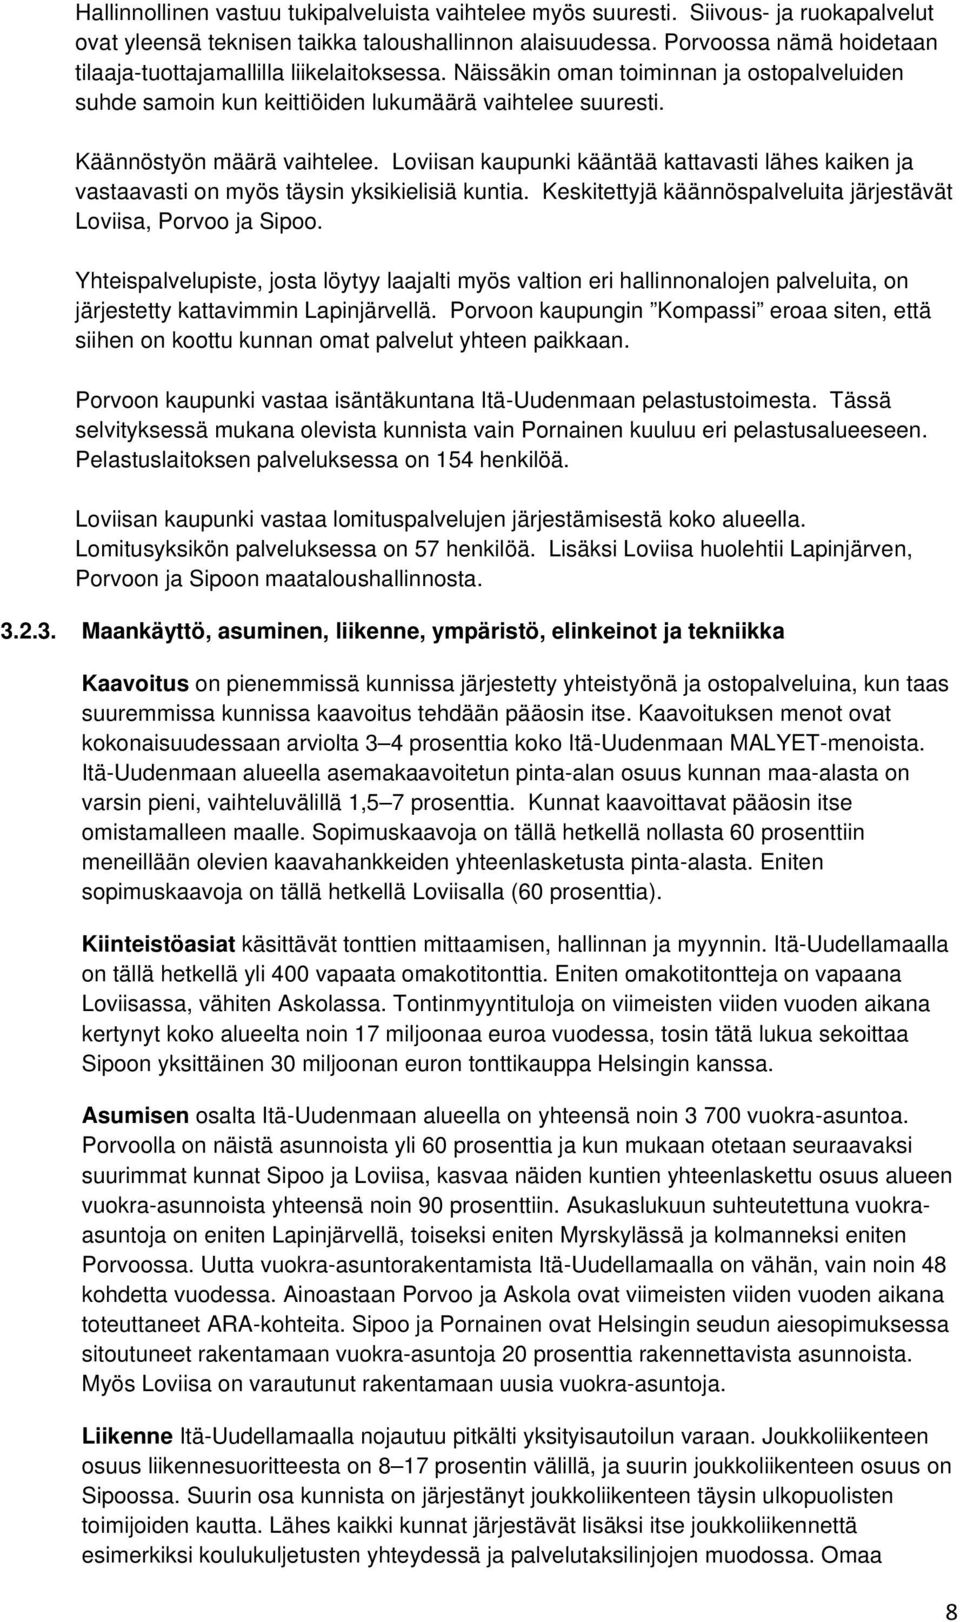 Loviisan kaupunki kääntää kattavasti lähes kaiken ja vastaavasti on myös täysin yksikielisiä kuntia. Keskitettyjä käännöspalveluita järjestävät Loviisa, Porvoo ja Sipoo.